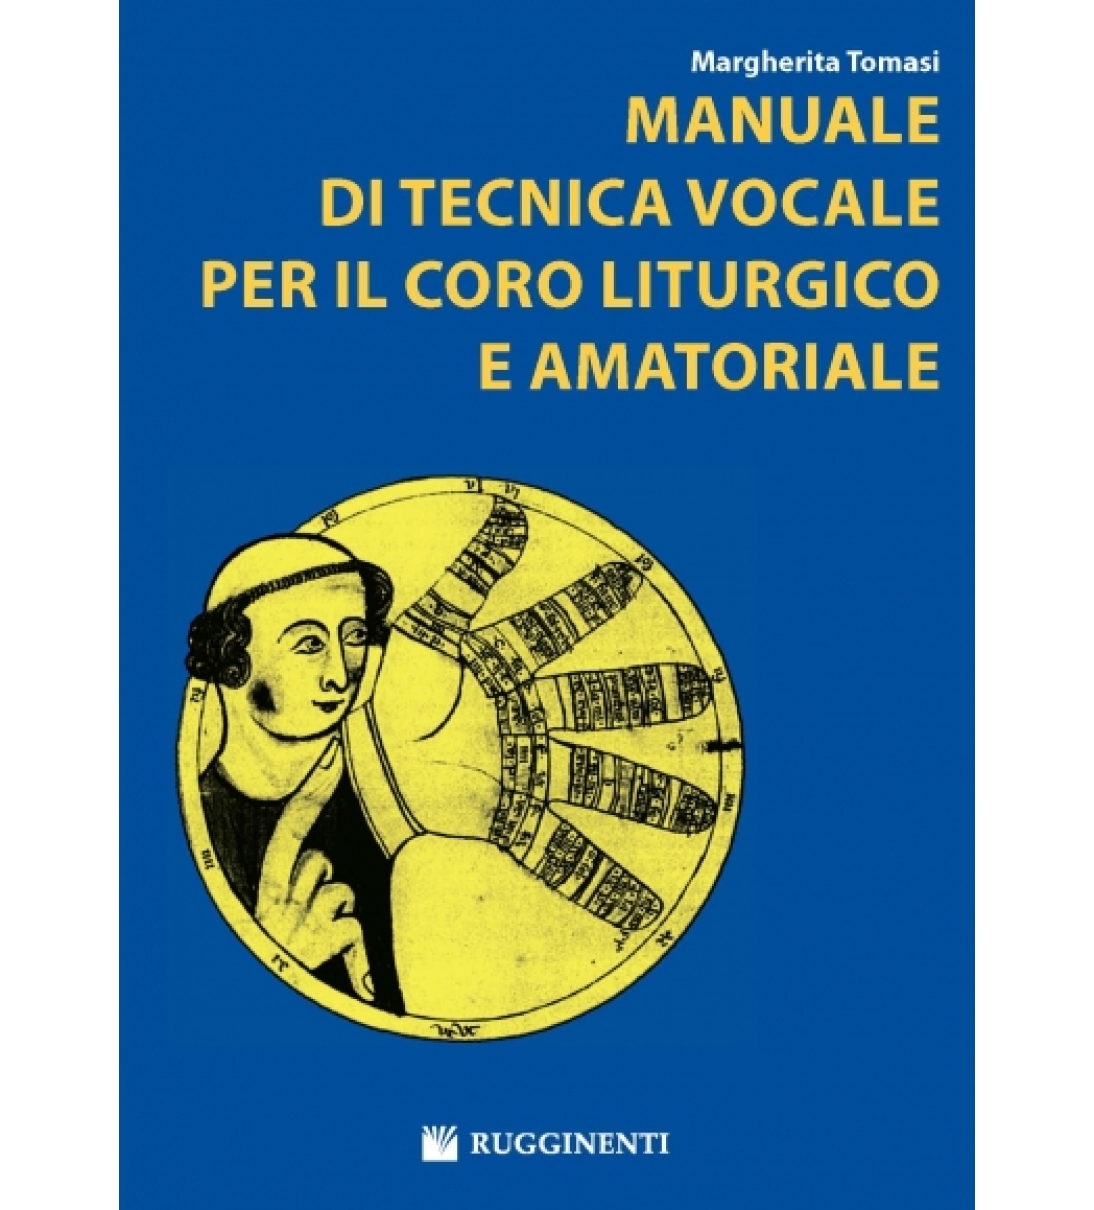 Manuale di Tecnica Vocale per il Coro Liturgico e Amatoriale